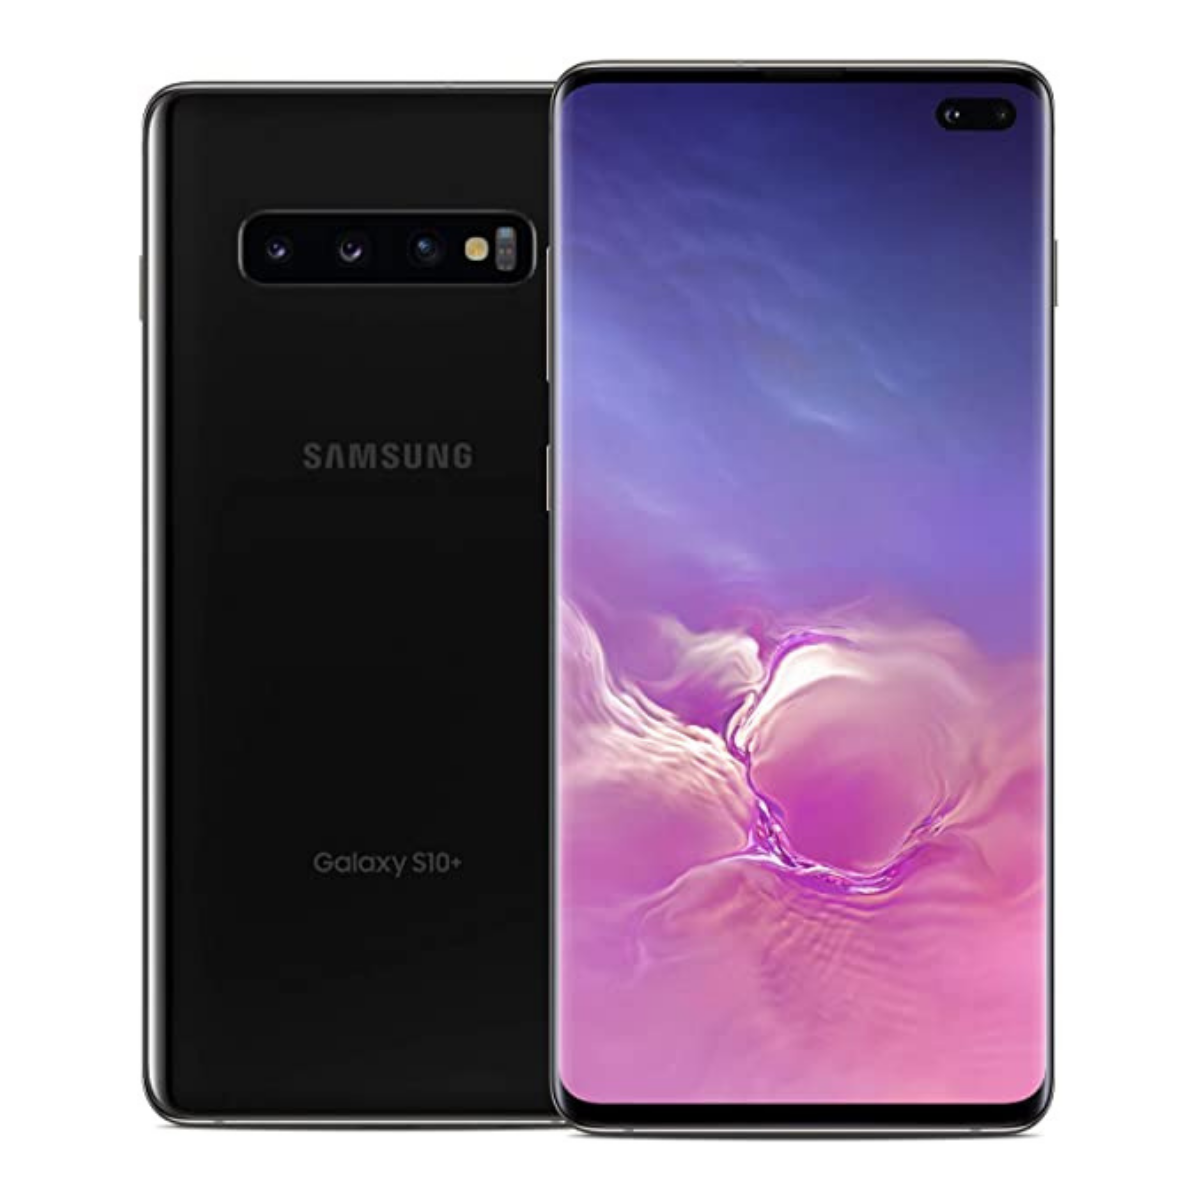 Sim Free Samsung Galaxy S10 Plus 128GB Unlocked Mobile Phone - Prism Black